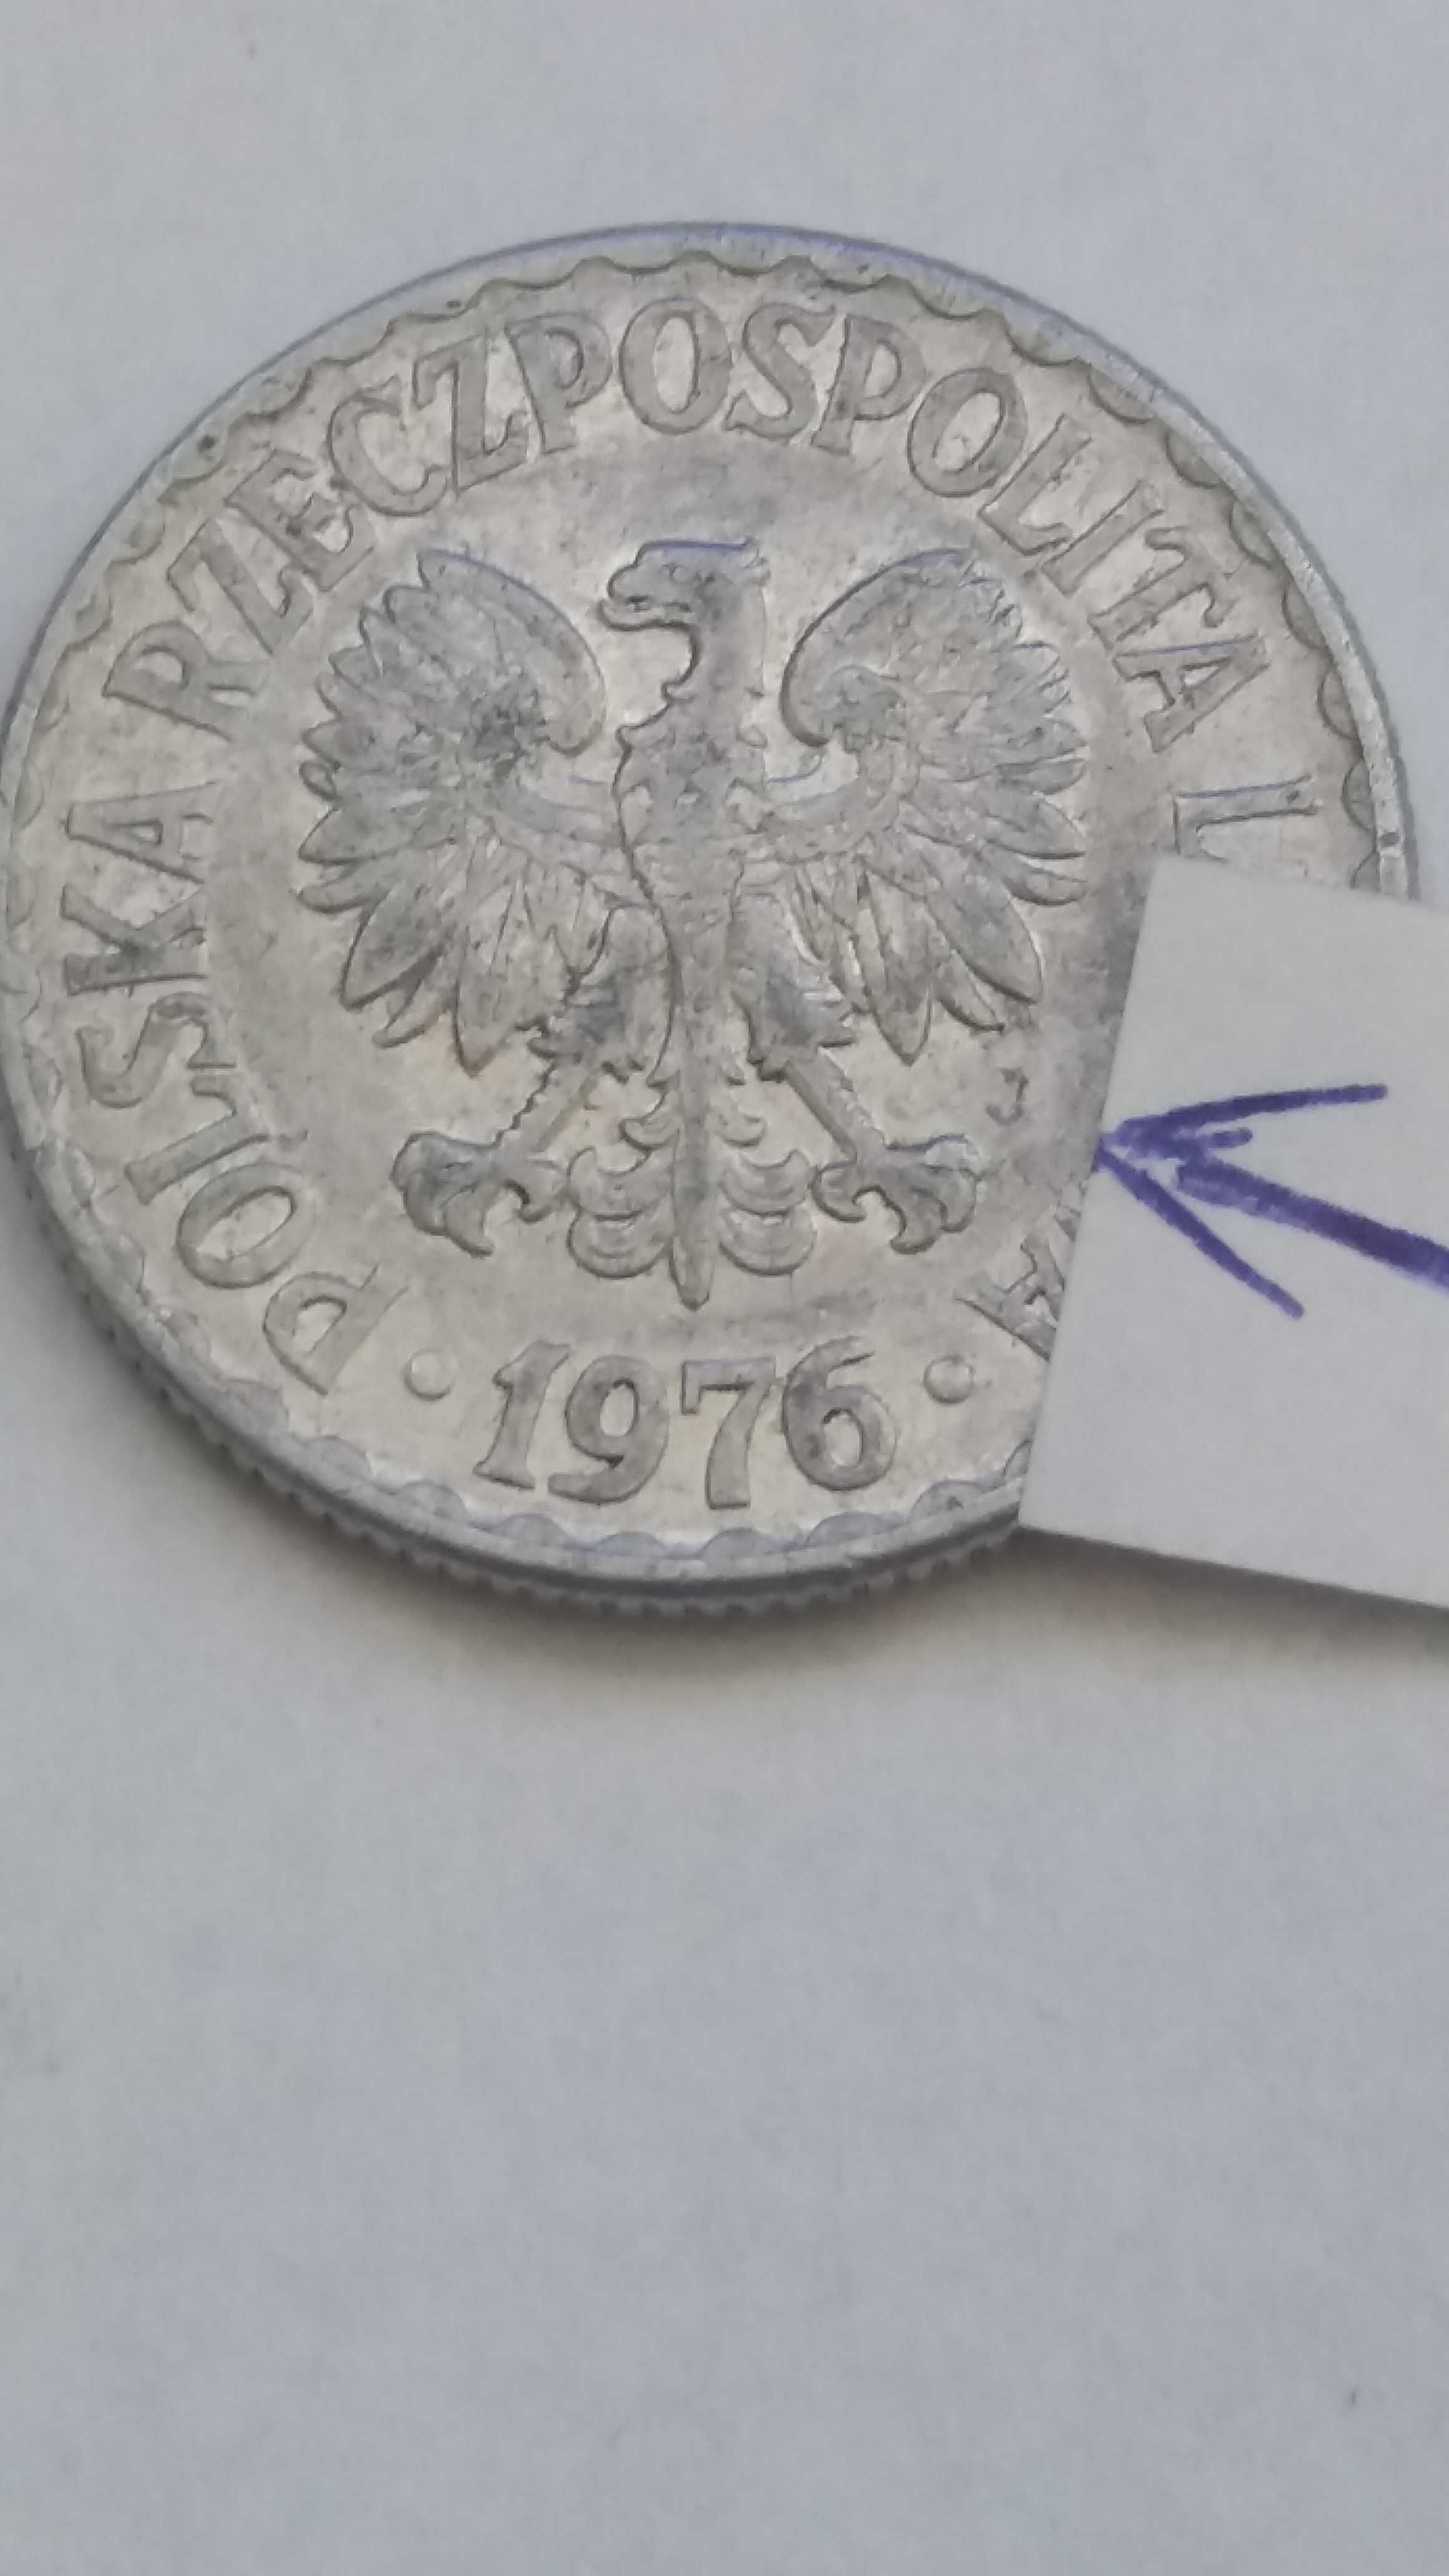 oM M098, starocie wyprzedaż  1 zł złoty 1976 Polska z literą J